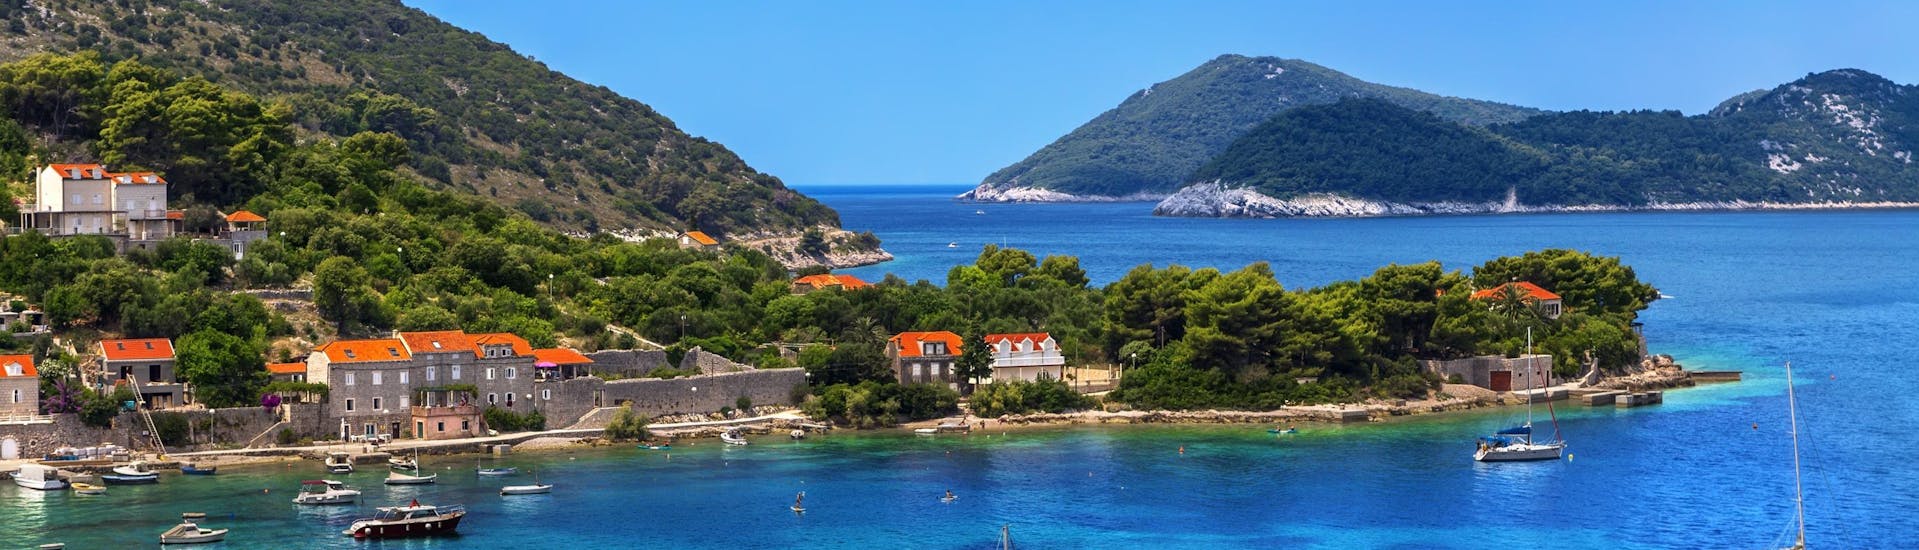 Immagine dell'isola di Kolocep, parte delle isole Elafiti vicino alla costa di Dubrovnik, una destinazione popolare per le gite in barca.